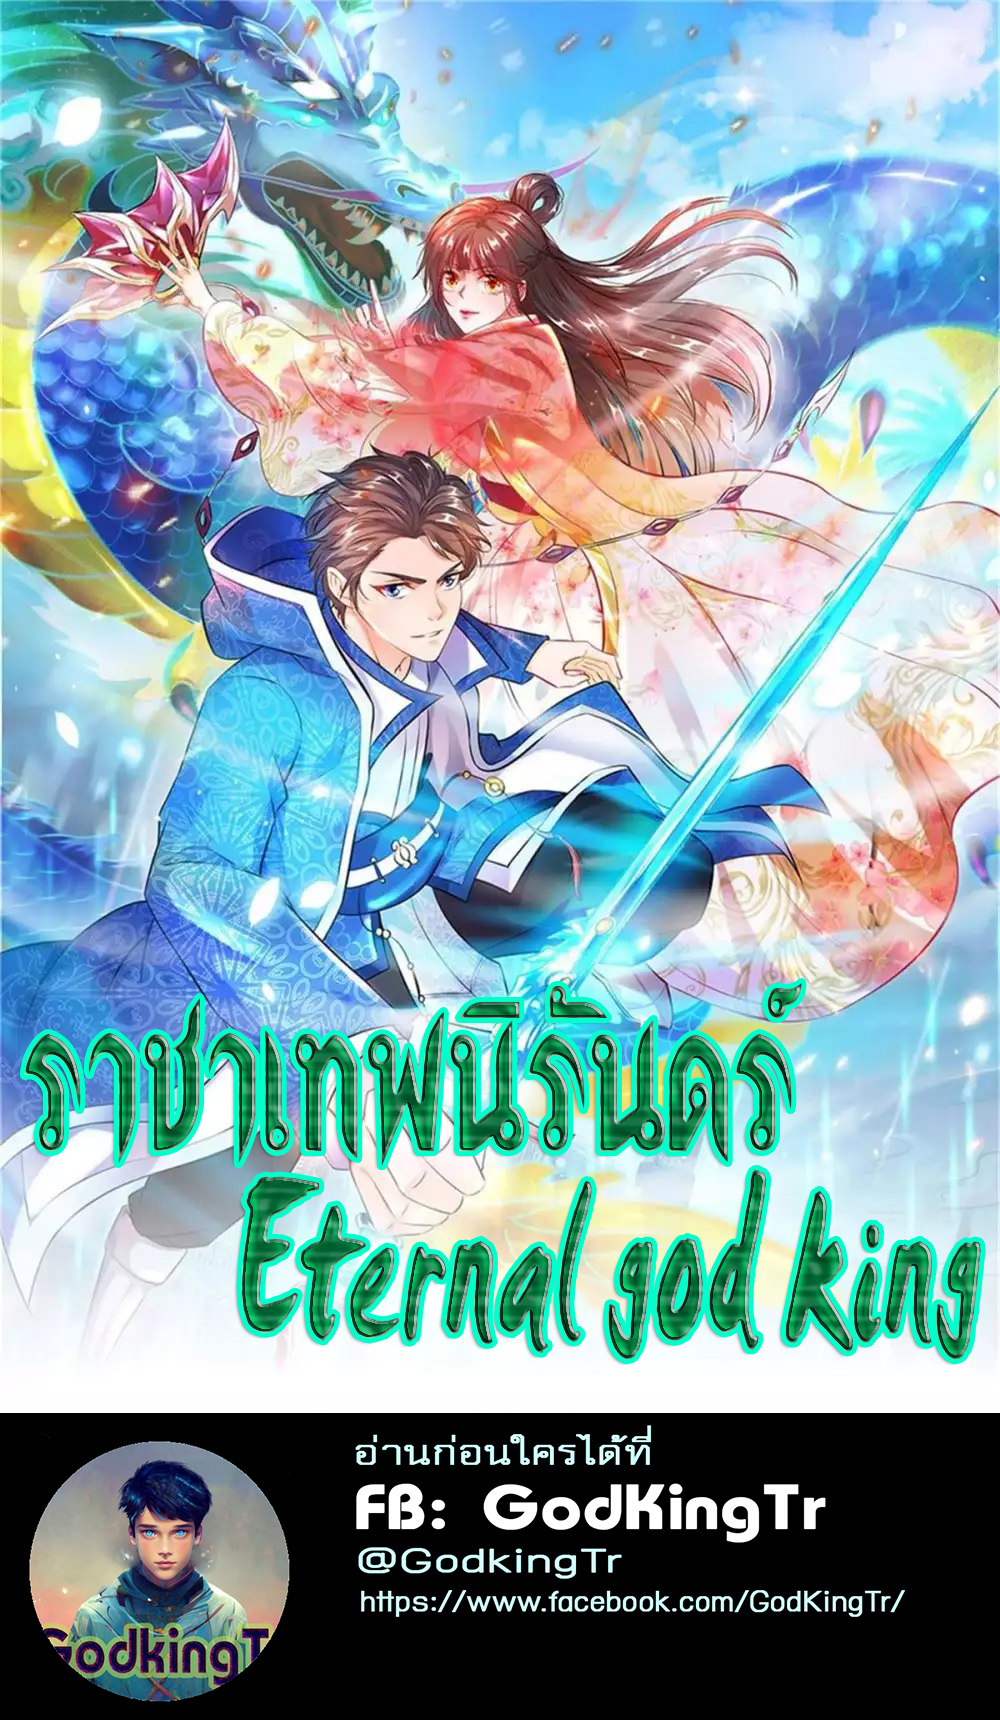 Eternal god king 55 (1)